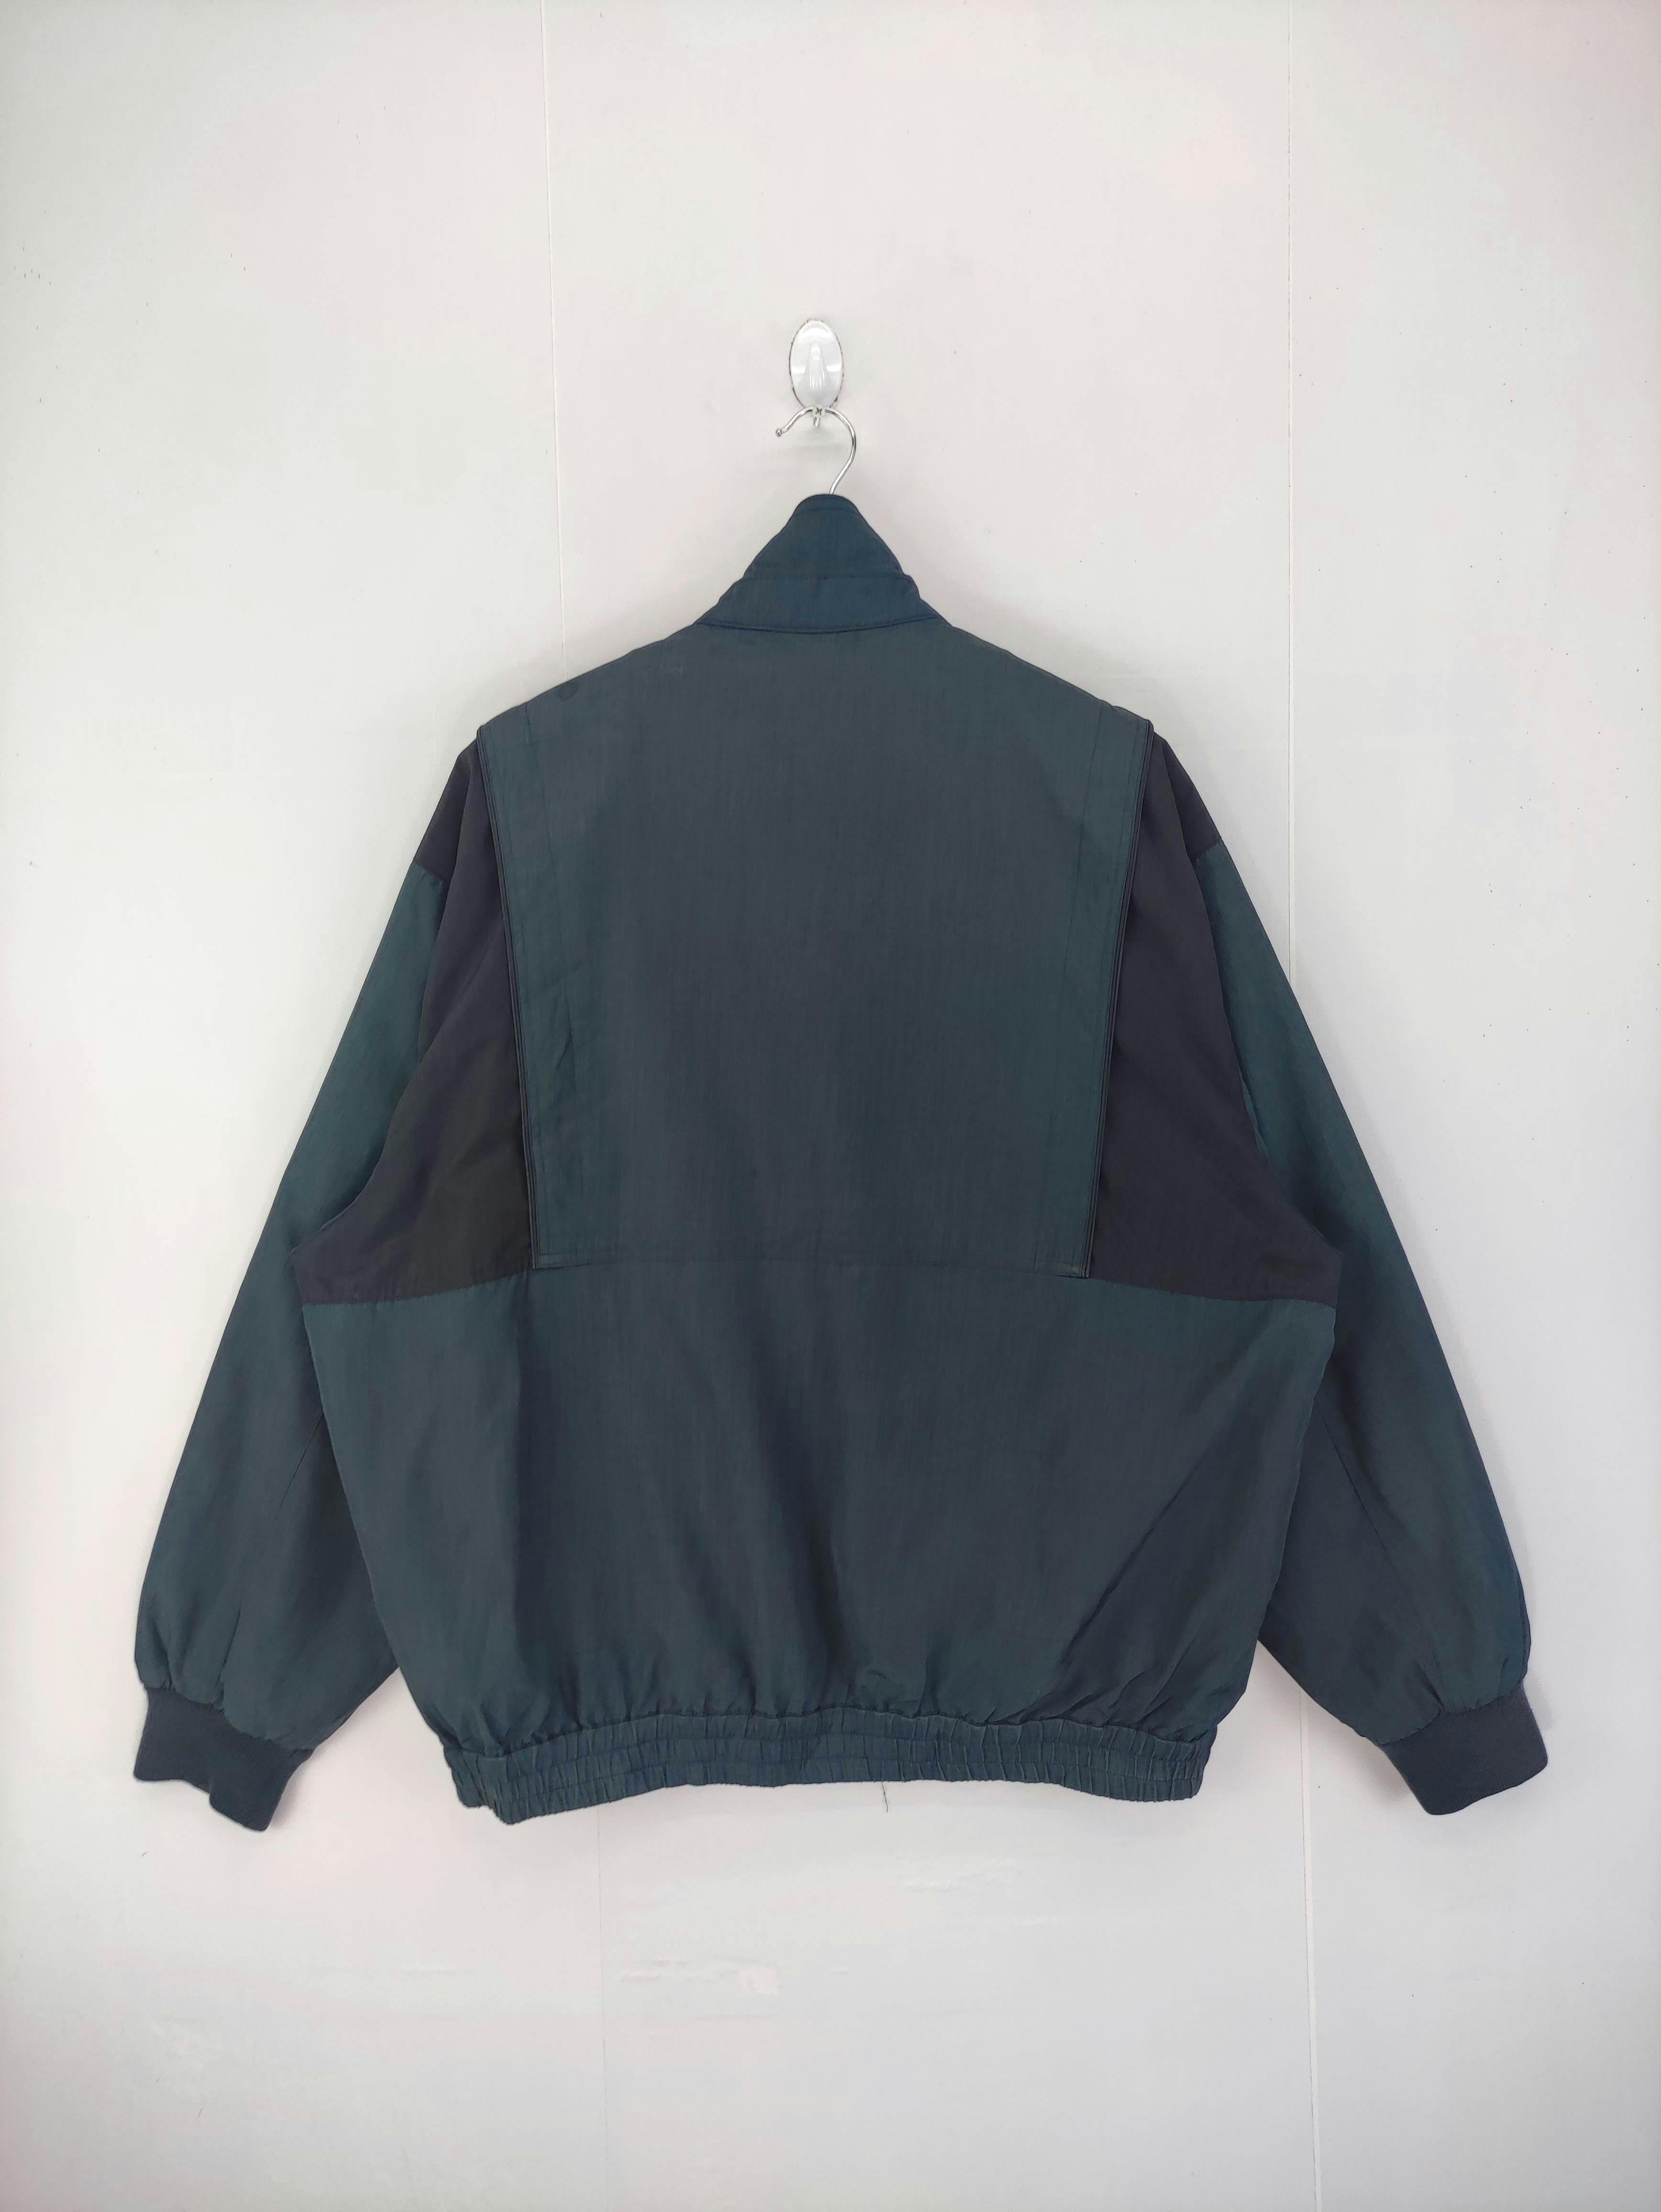 Vintage Unbrand Jacket Zipper - 8